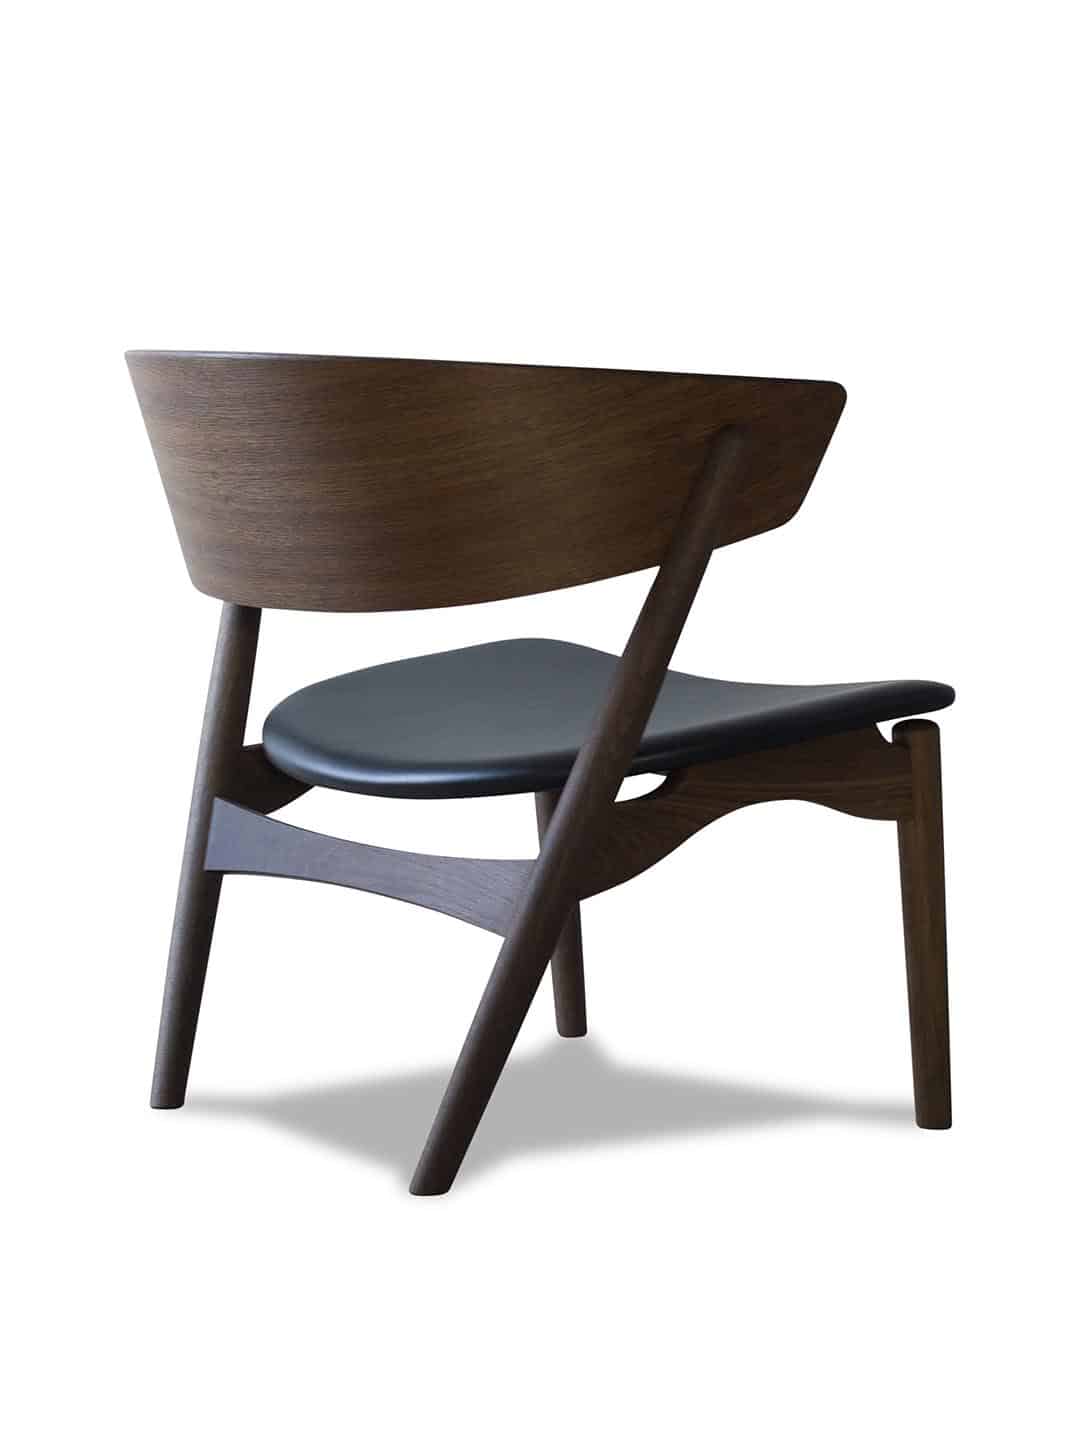 Дизайнерское кресло Sibast №7 дымчатый дуб/кожа victory black на белом фоне